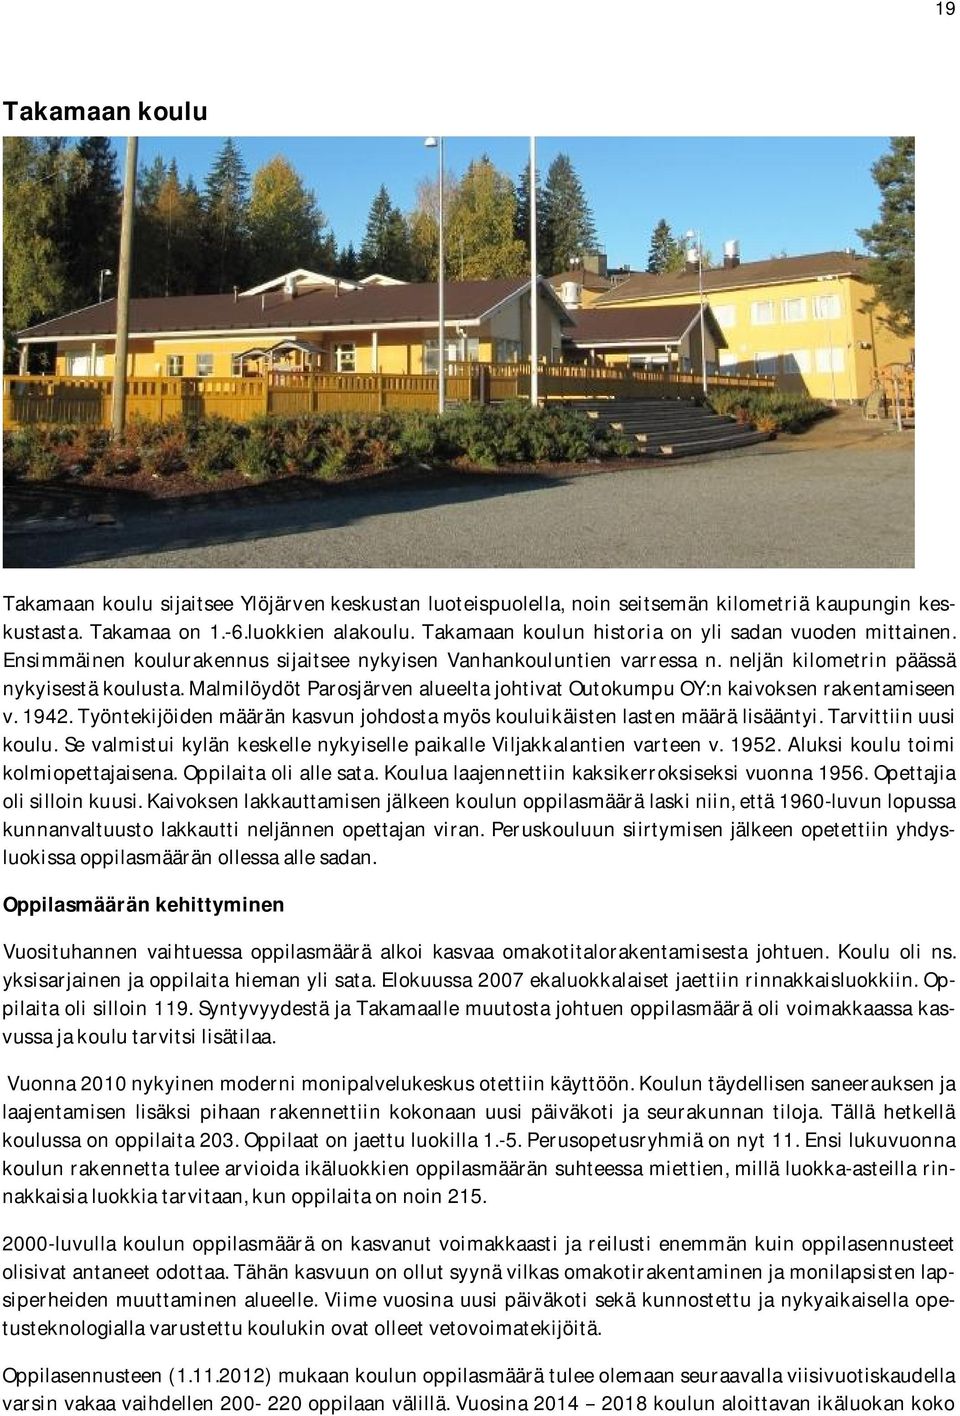 malmilöydötparosjärvenalueeltajohtivatoutokumpuoy:nkaivoksenrakentamiseen v.1942.työntekijöidenmääränkasvunjohdostamyöskouluikäistenlastenmäärälisääntyi.tarvittiinuusi koulu.